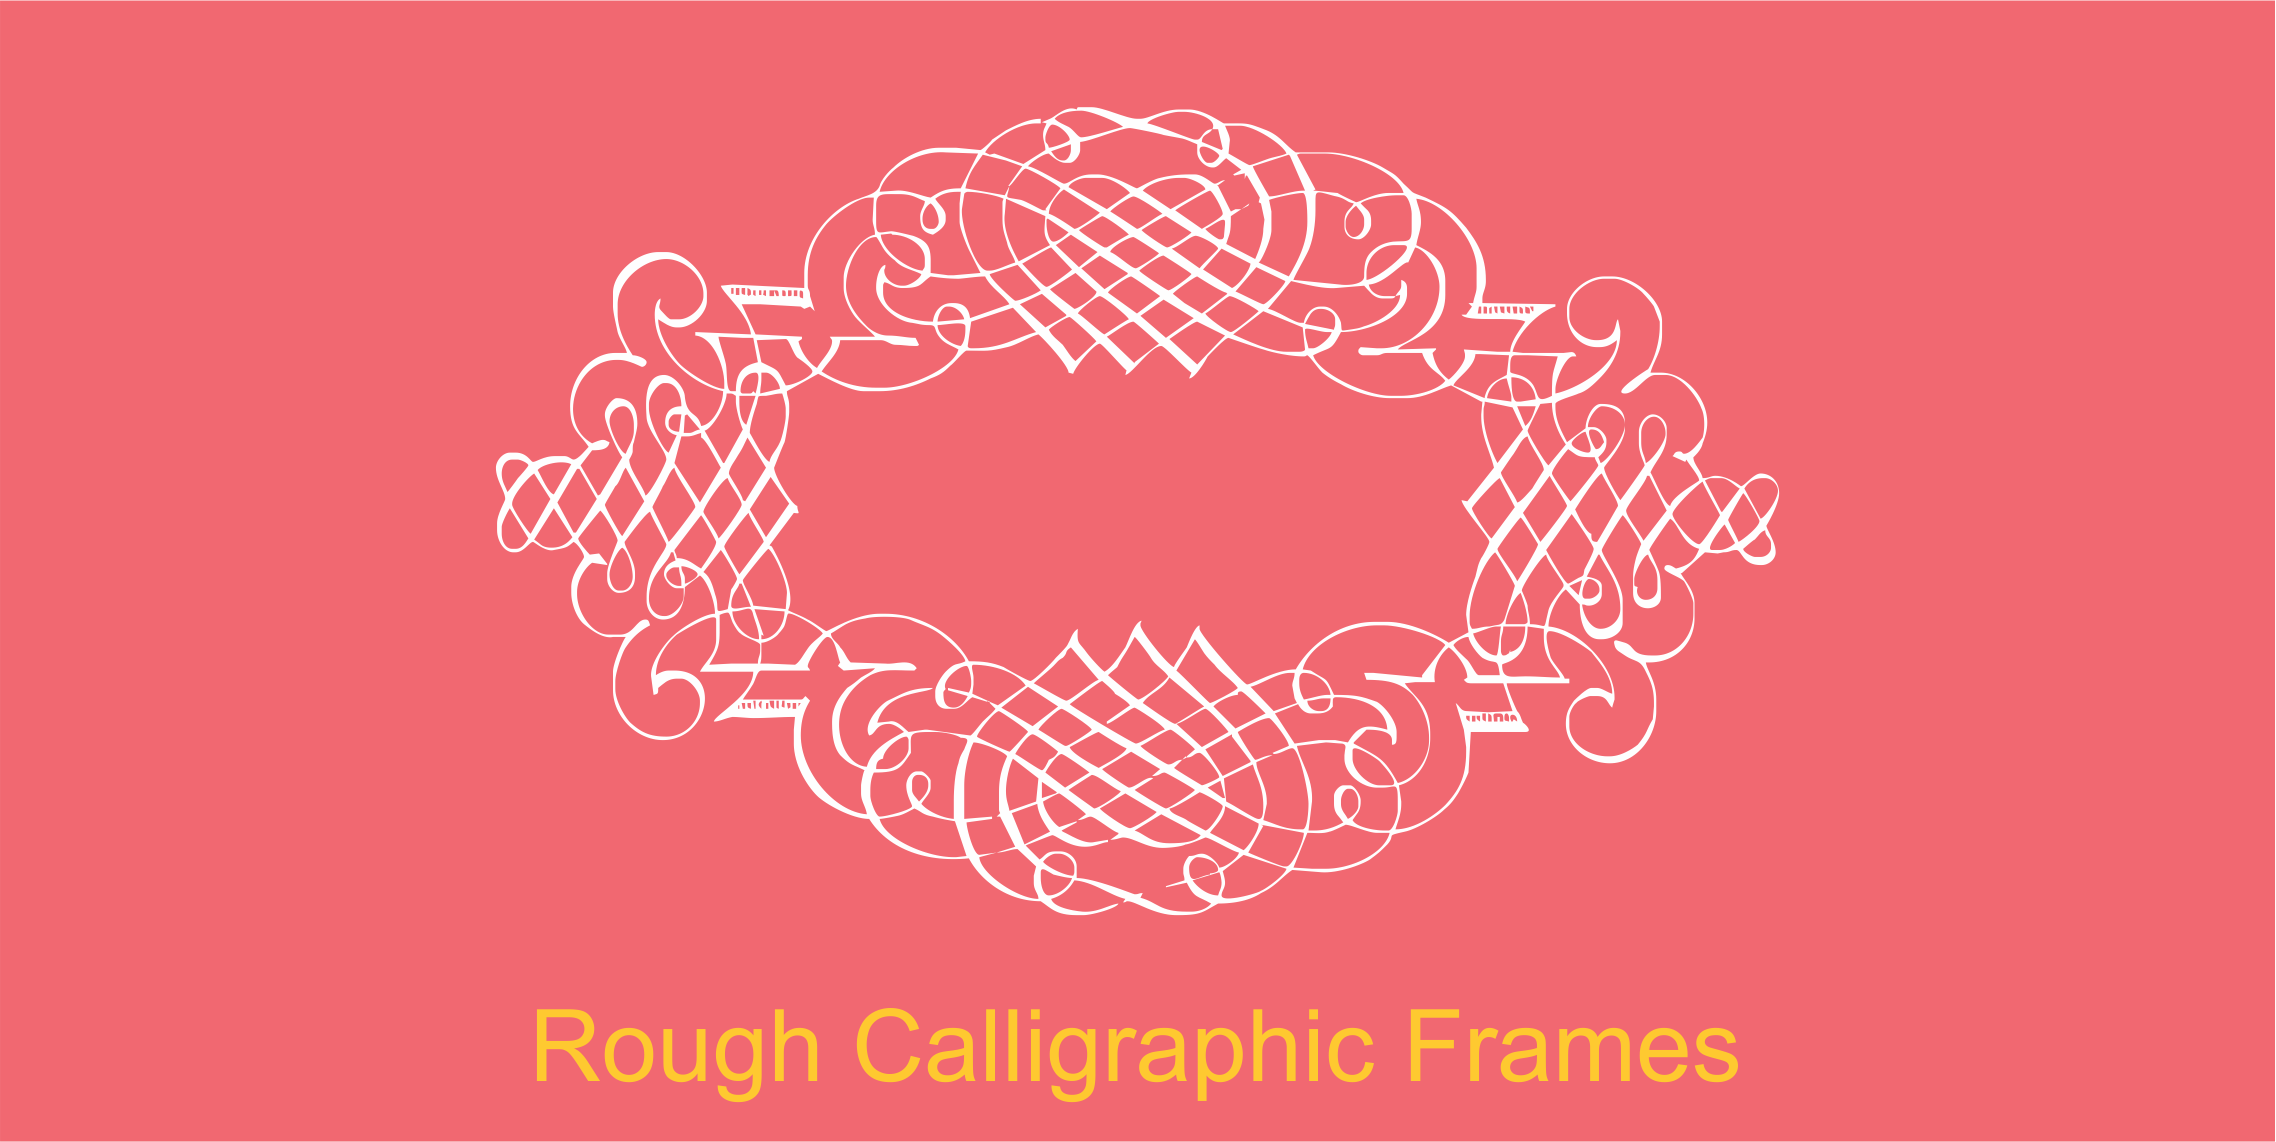 Rough Calligraphic Frames